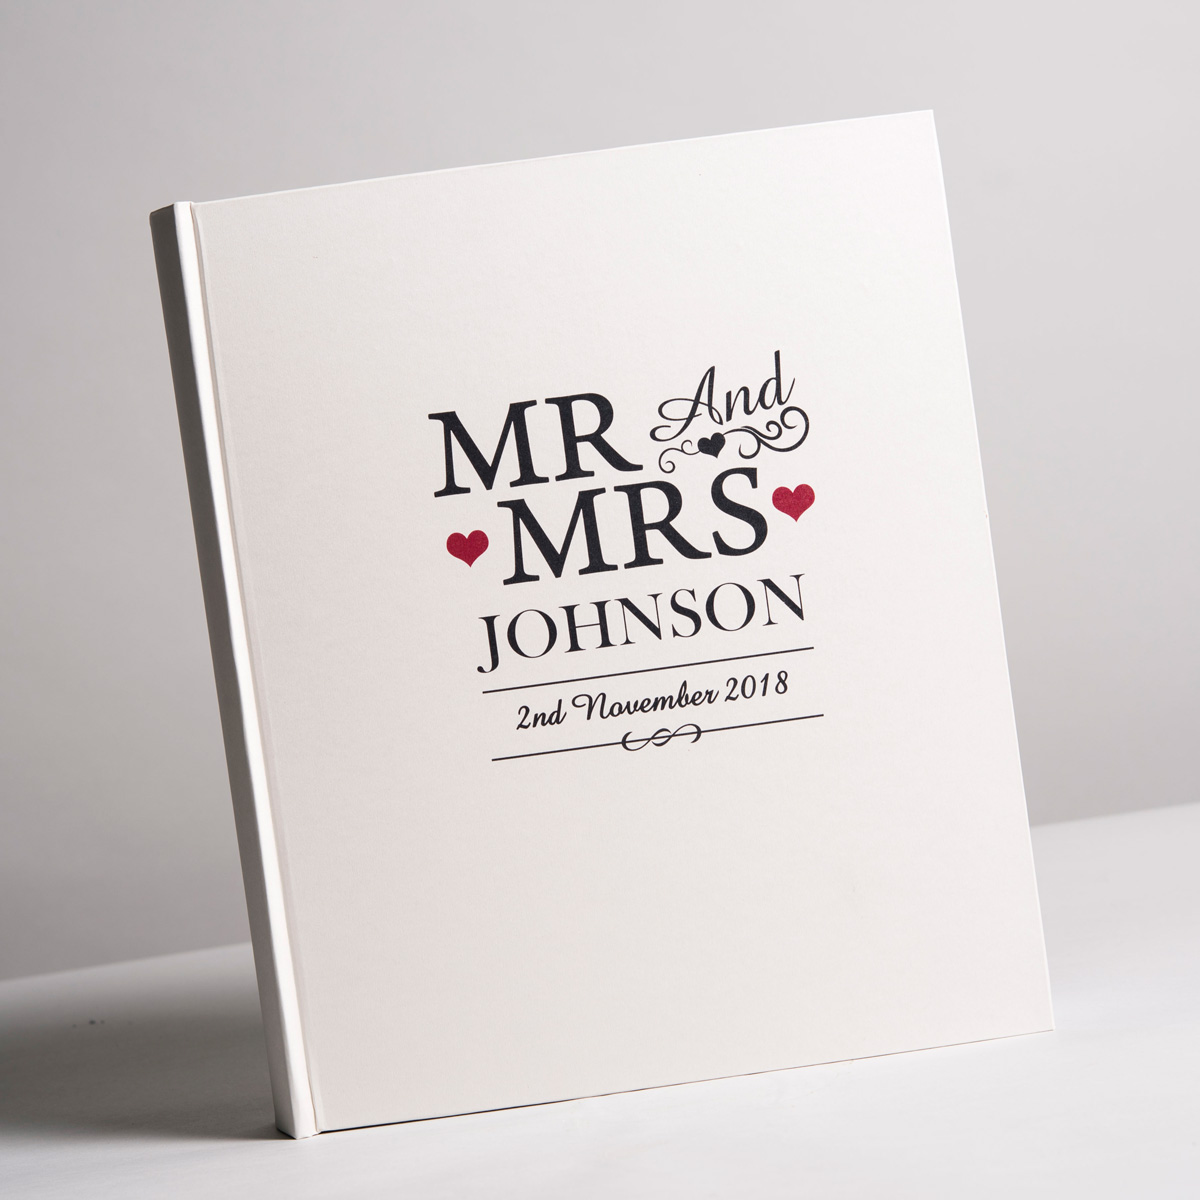 Personalised Photo Album - Mr & Mrs